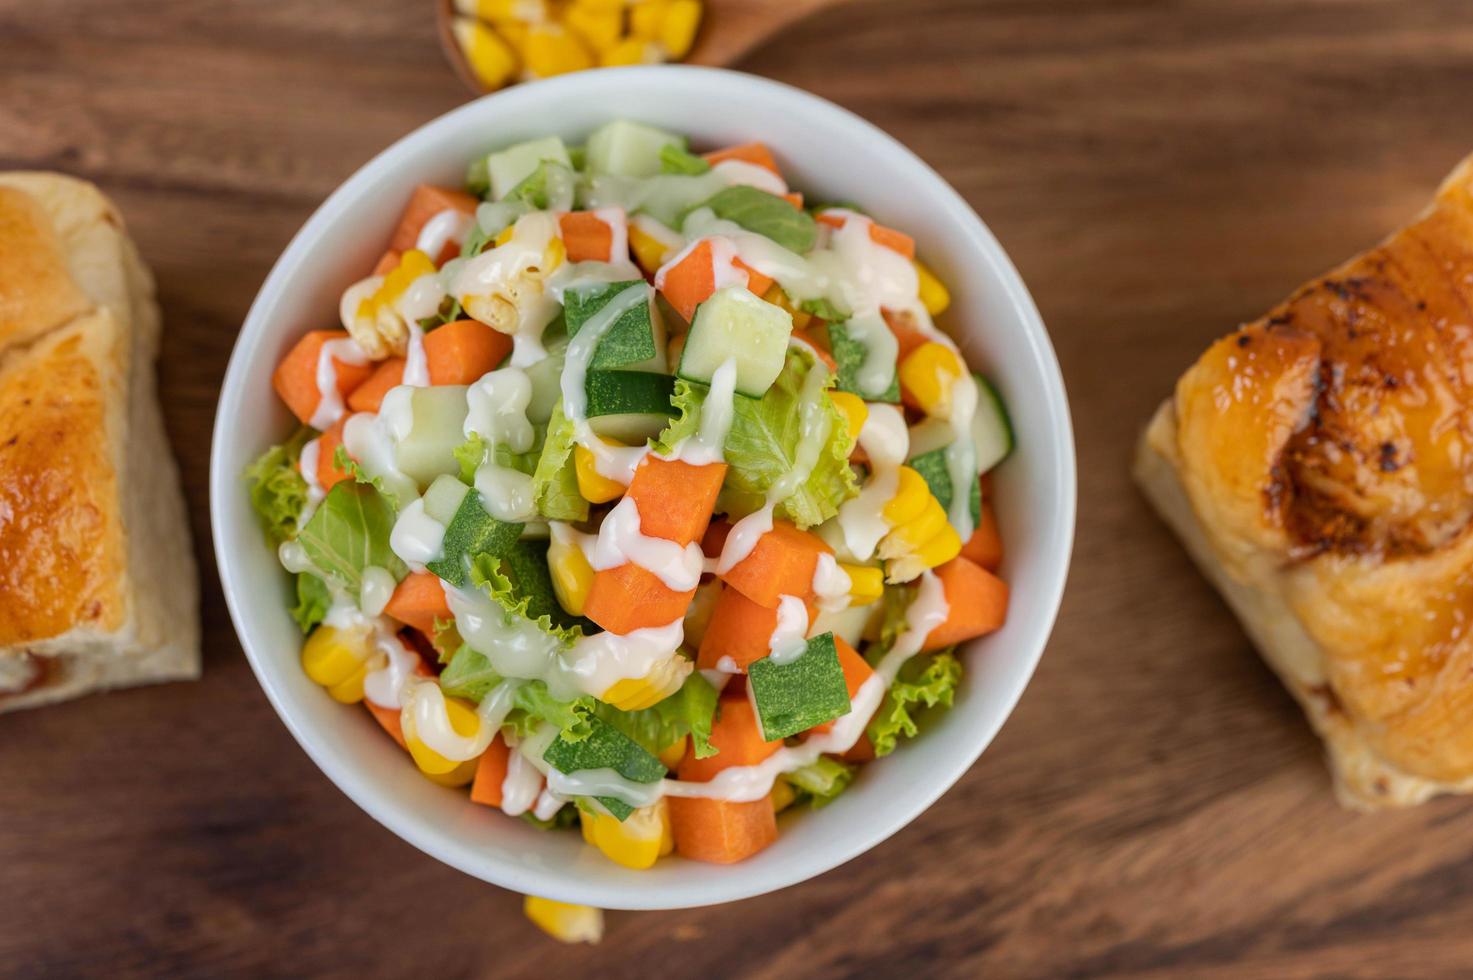 Gurken-, Mais-, Karotten- und Salatsalat foto